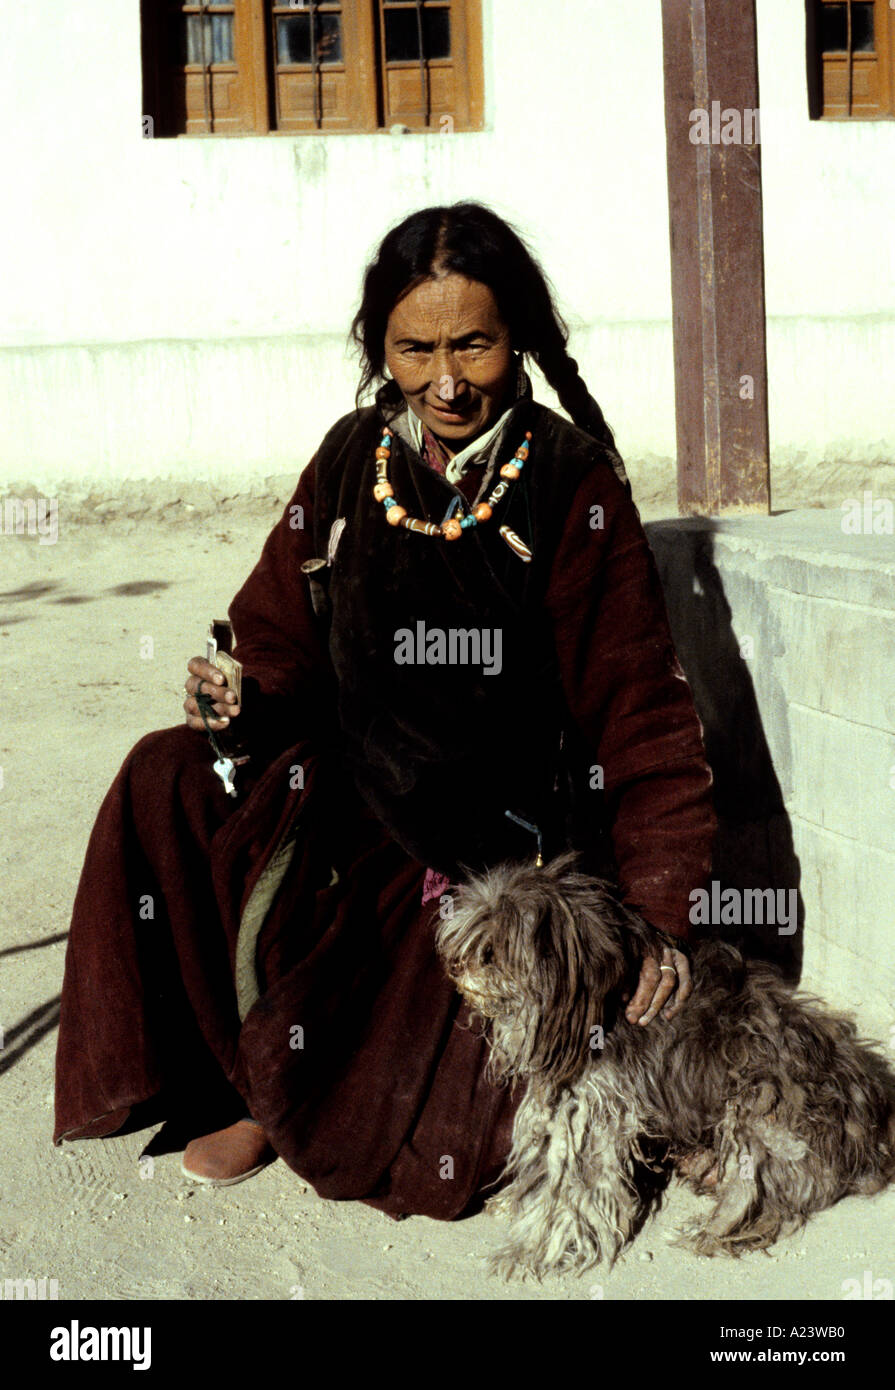 Propriétaire de l'hôtel Vue Palace à Leh, Ladakh est assis au soleil, porter des vêtements traditionnels et bijoux avec son animal de compagnie chien Lhassa Apso Banque D'Images